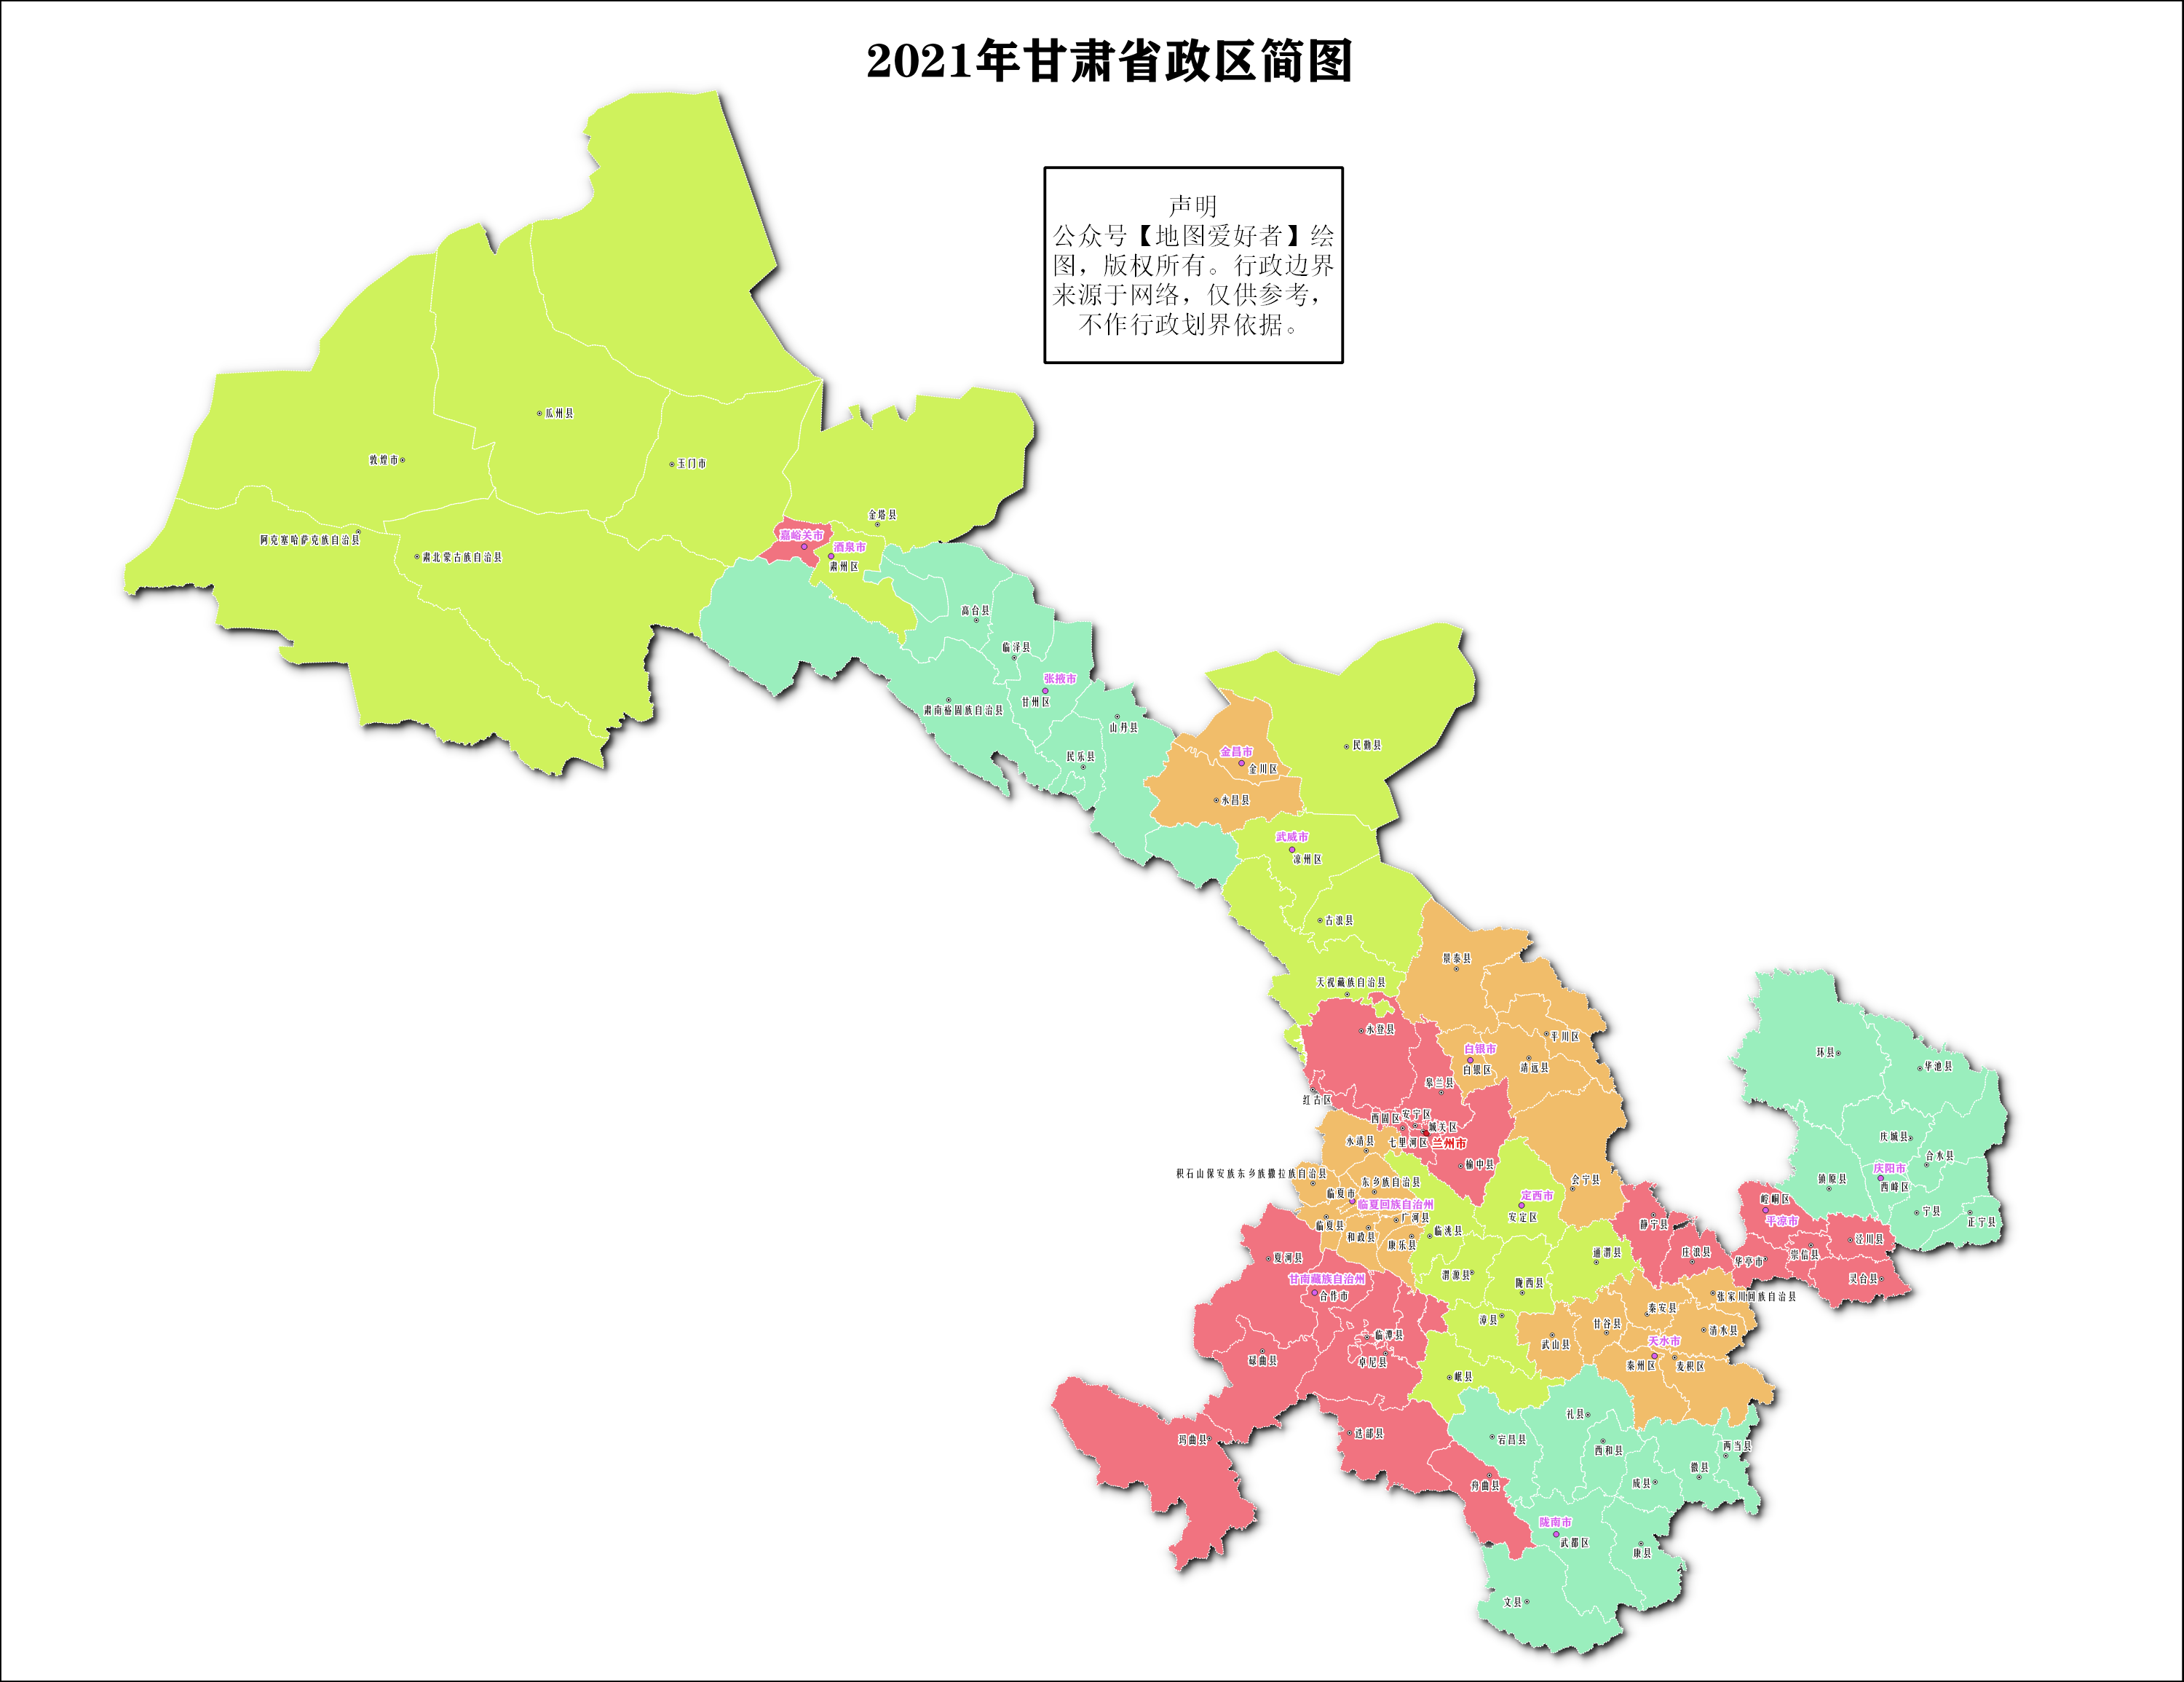 2021年全套分省地图升级版(美化 水域 勘误) 